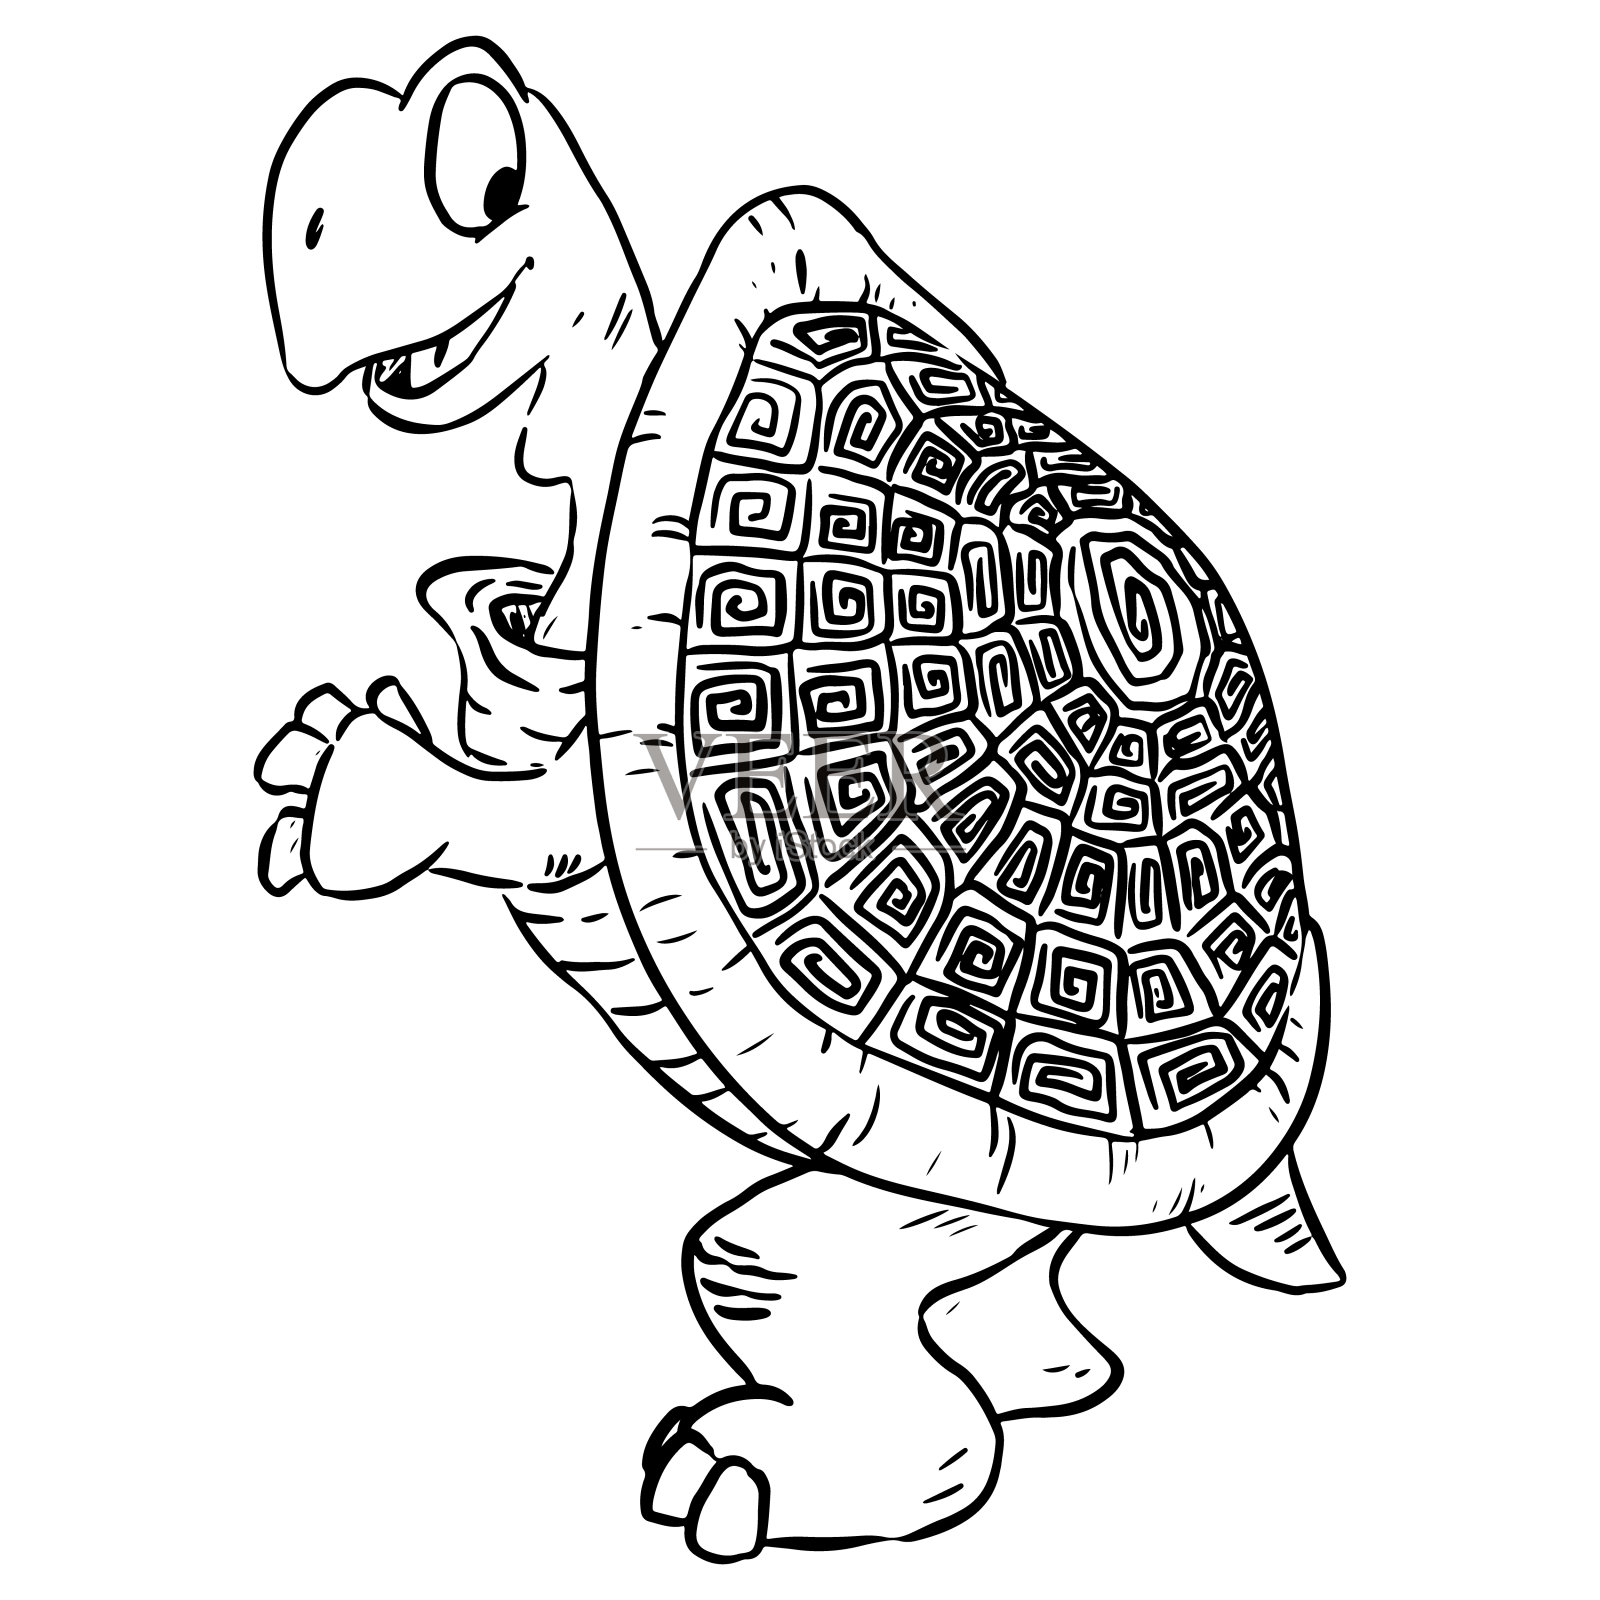 乌龟的形象。可爱的乌龟的卡通插图。漫画风格的宠物涂鸦设计元素图片